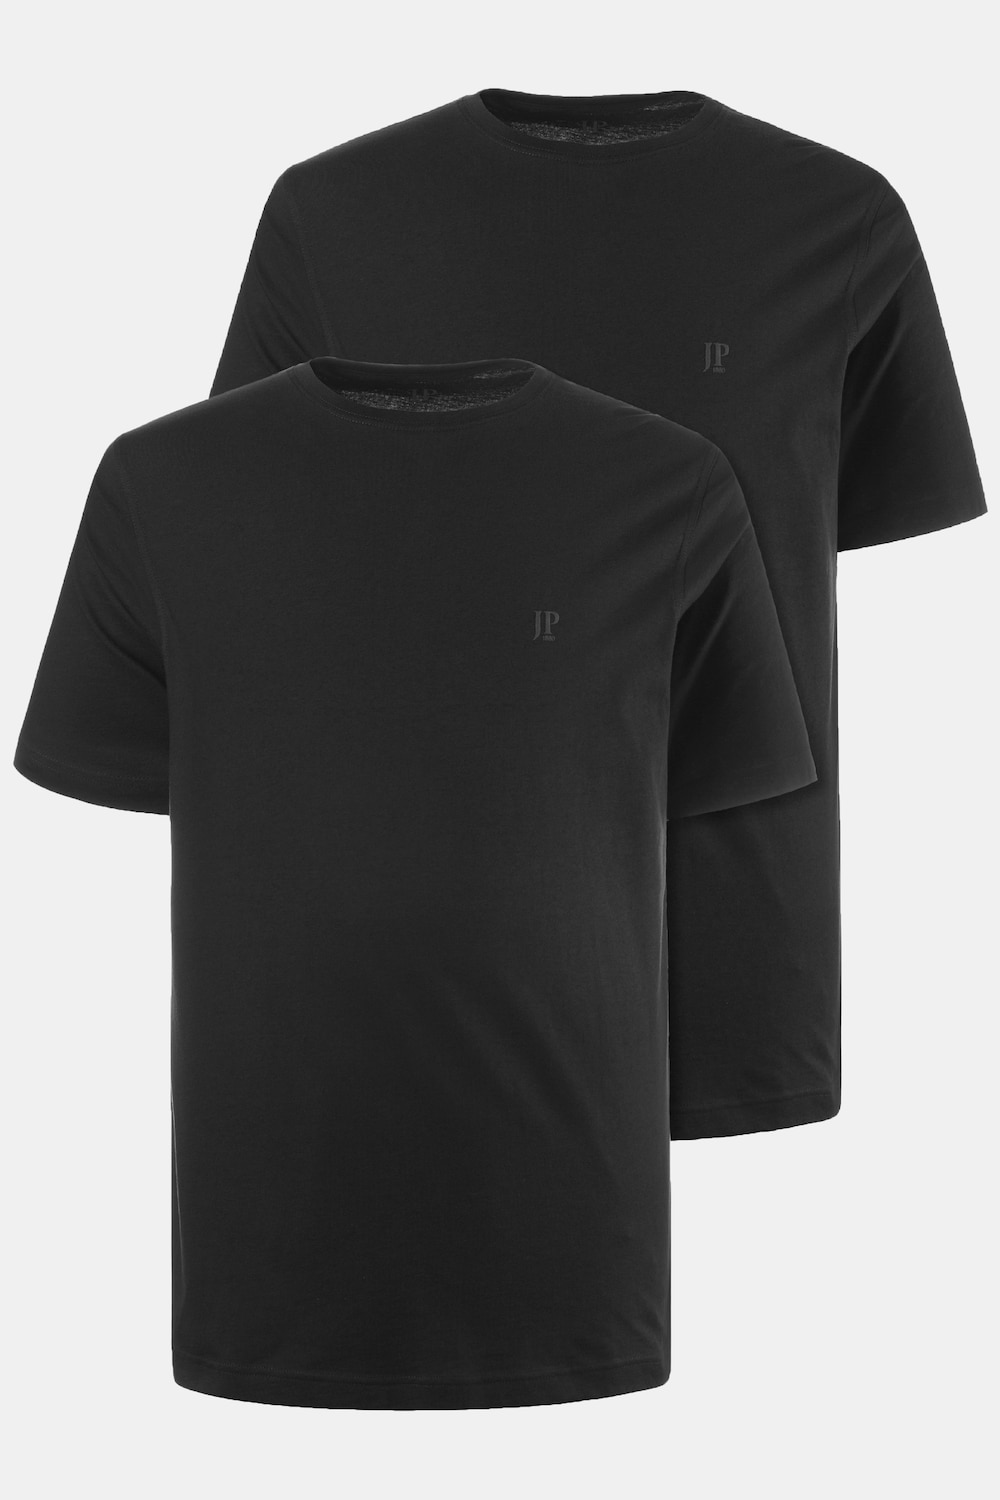 Große Größen T-Shirts, Herren, schwarz, Größe: 3XL, Baumwolle, JP1880